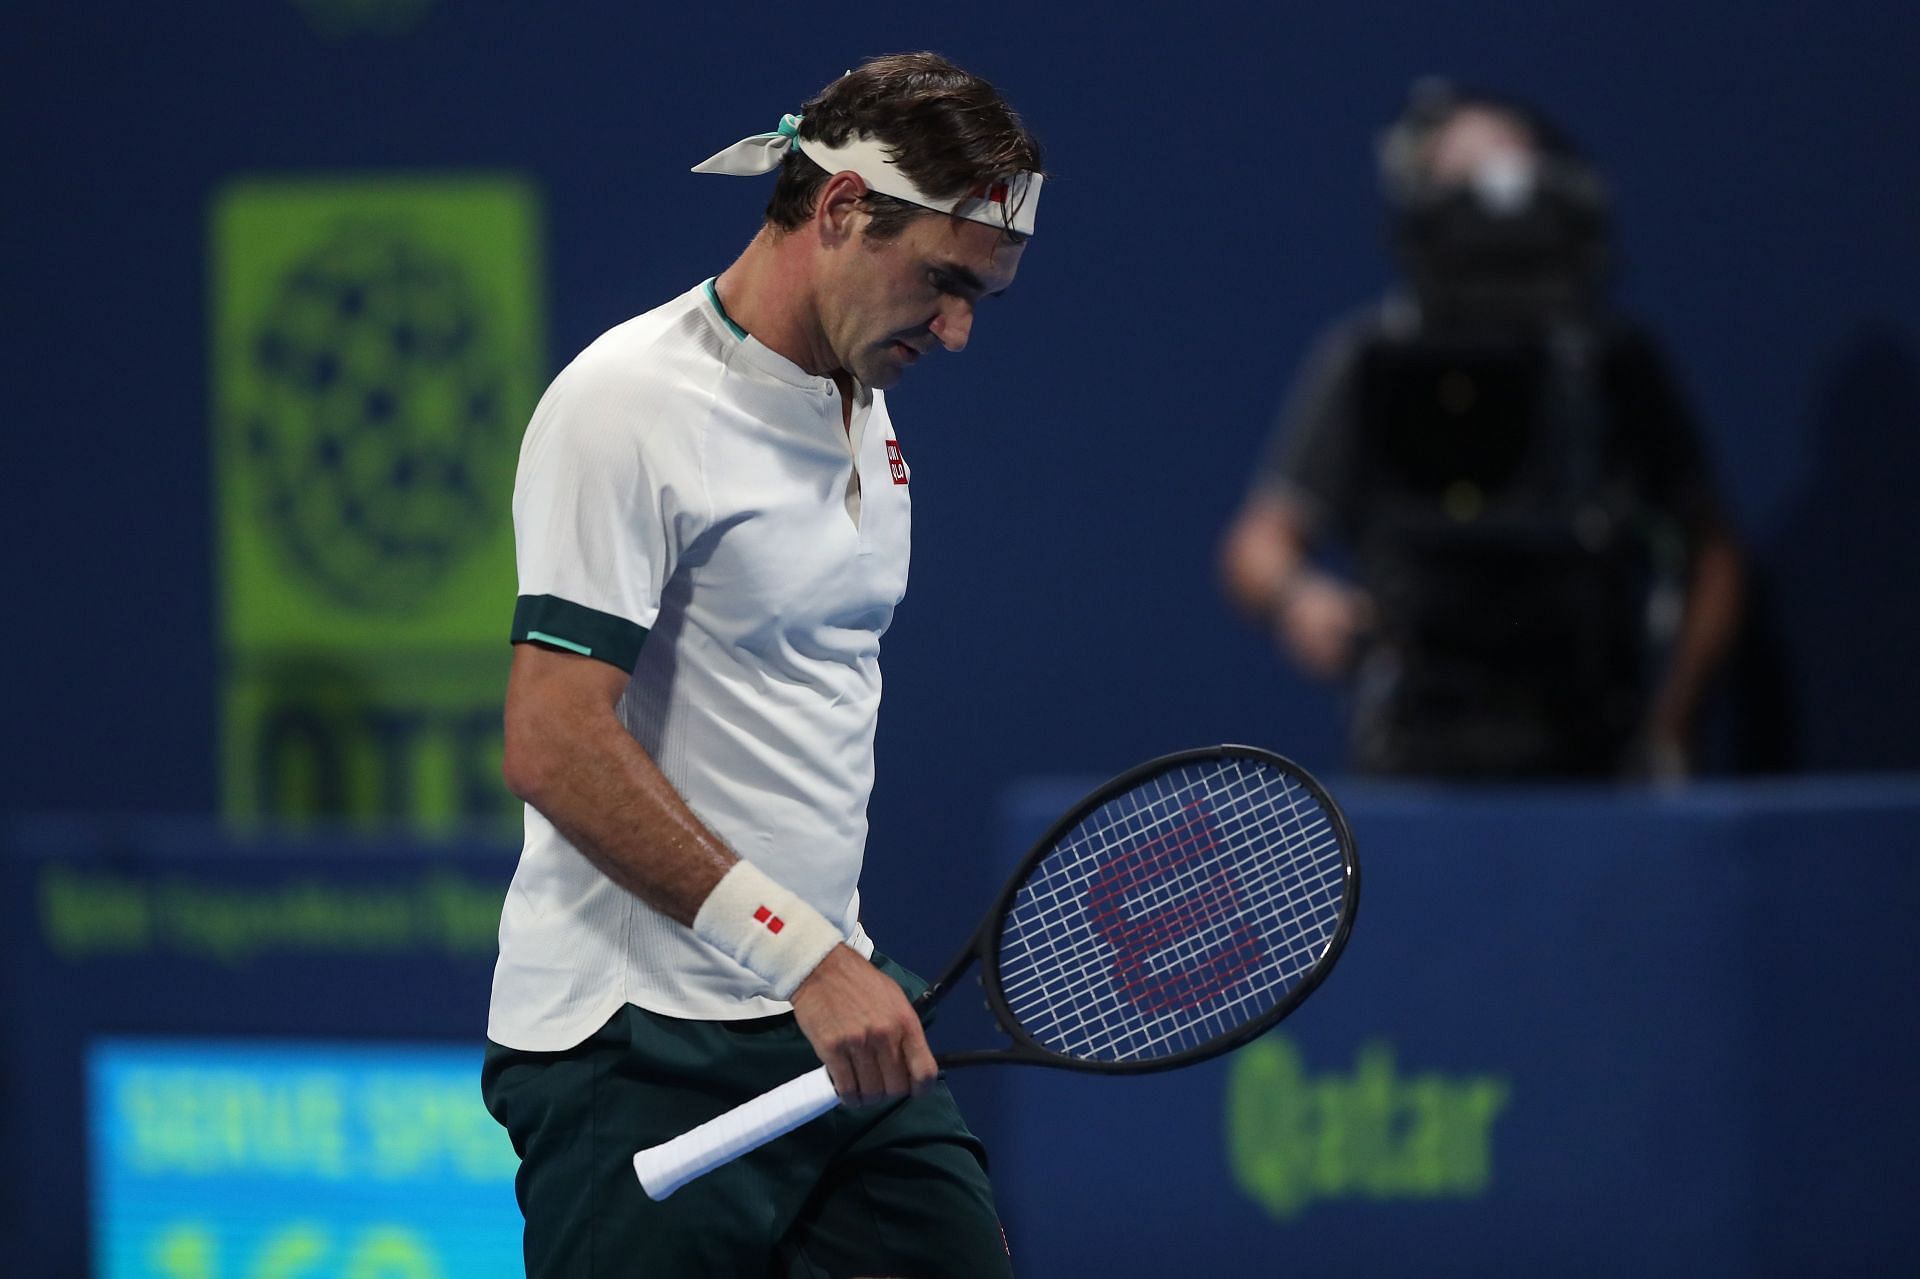 Roger Federer during his match against Nikoloz Basilashvili in Doha